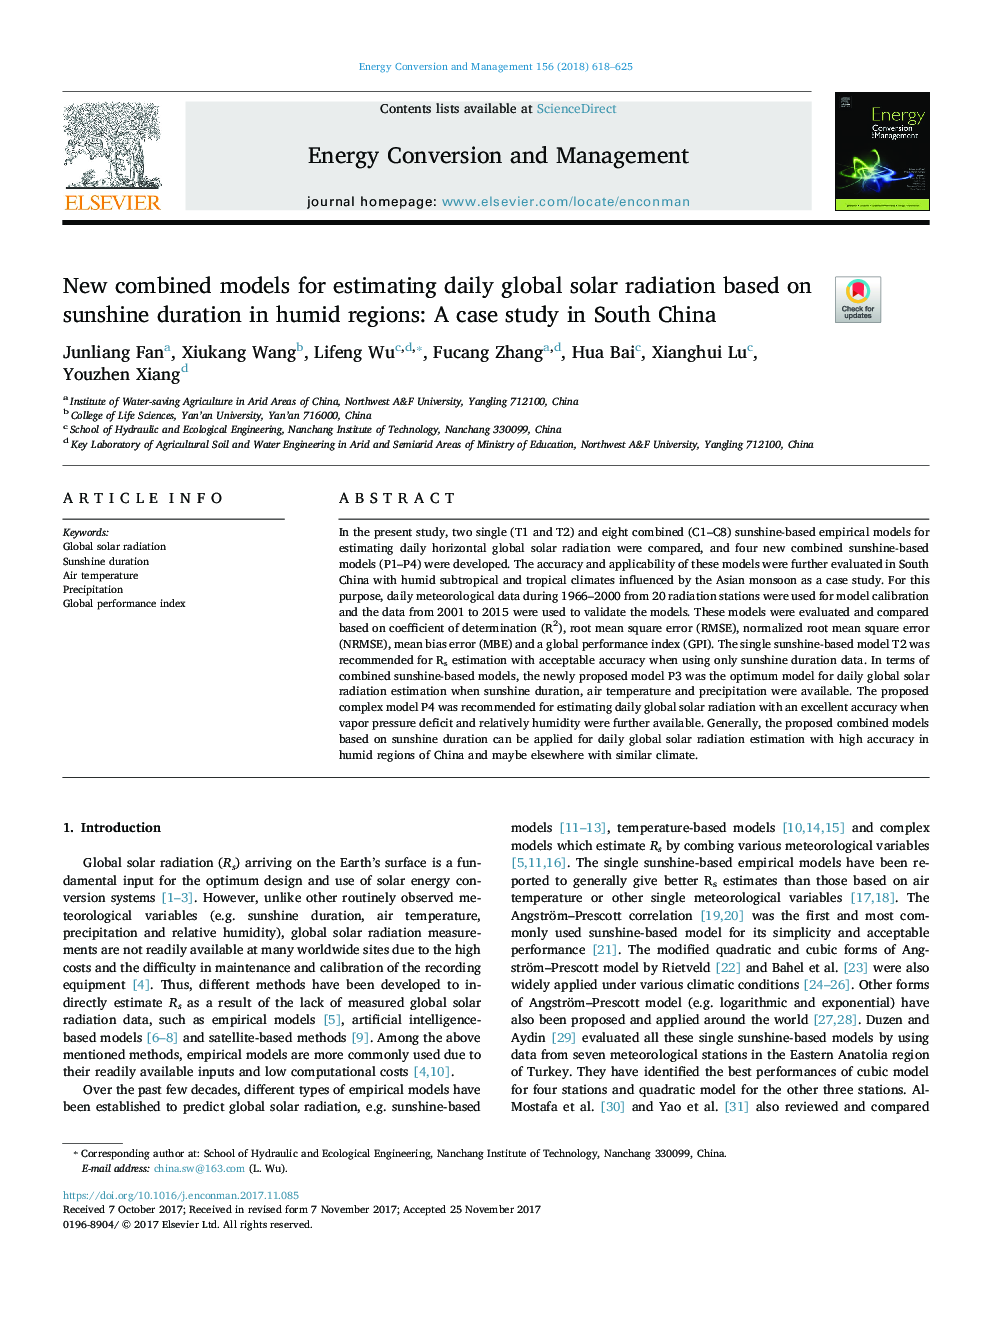 مدل های ترکیبی جدید برای برآورد تابش خورشیدی روزانه جهانی بر اساس مدت زمان نور آفتاب در مناطق مرطوب: مطالعه موردی در جنوب چین 